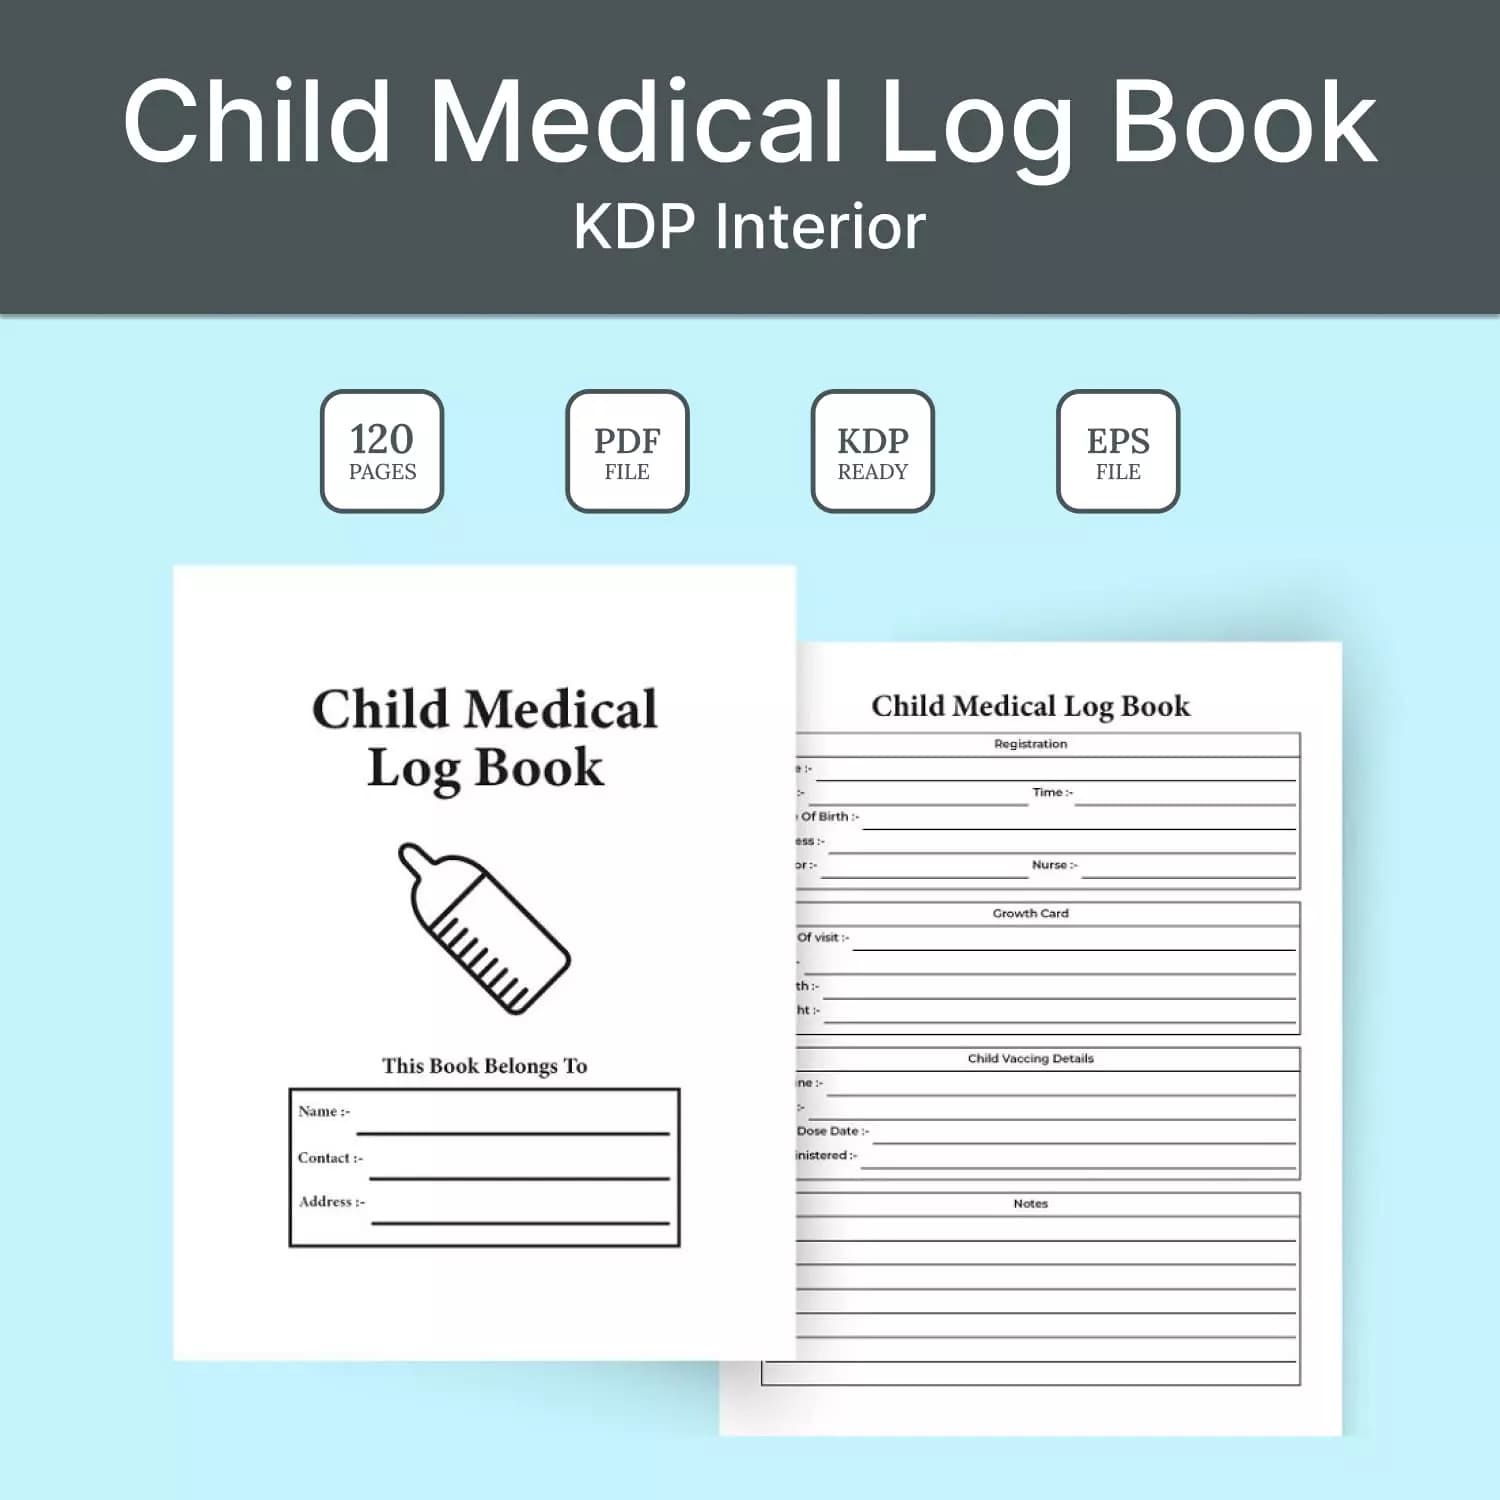 Child Medical Log Book Kdp Interior Preview image.